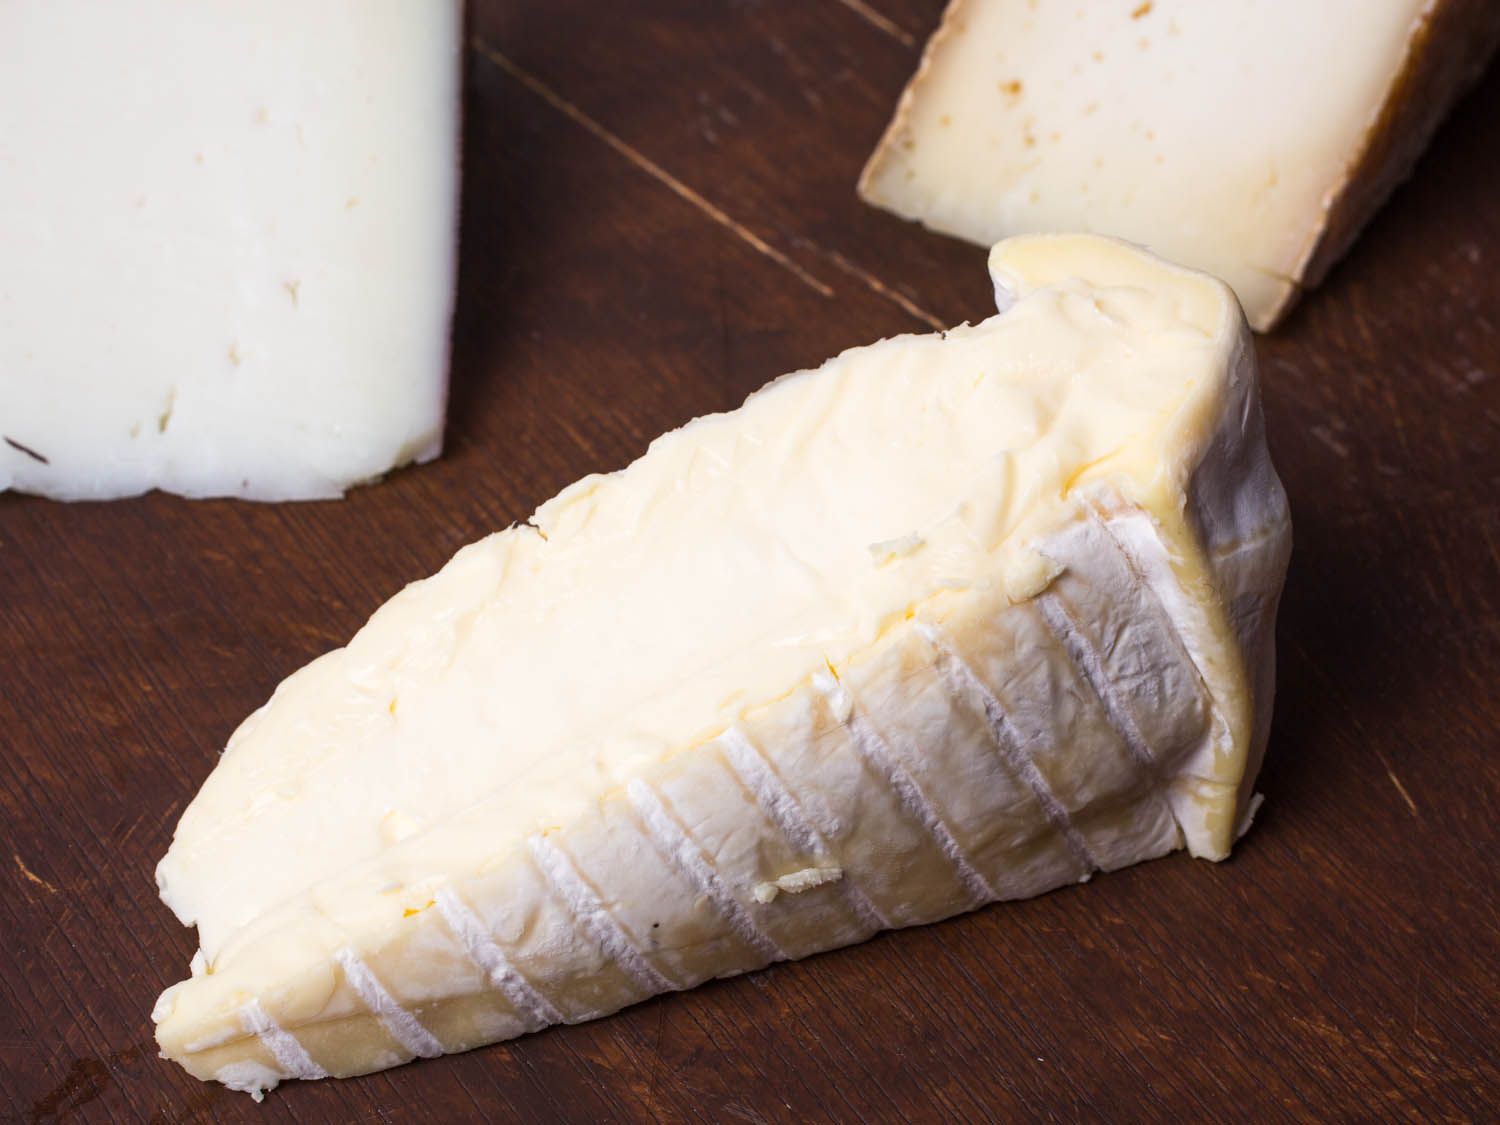 20141105 -感恩节——奶酪,奶酪daffinois vicky -沃斯克- 2. - jpg